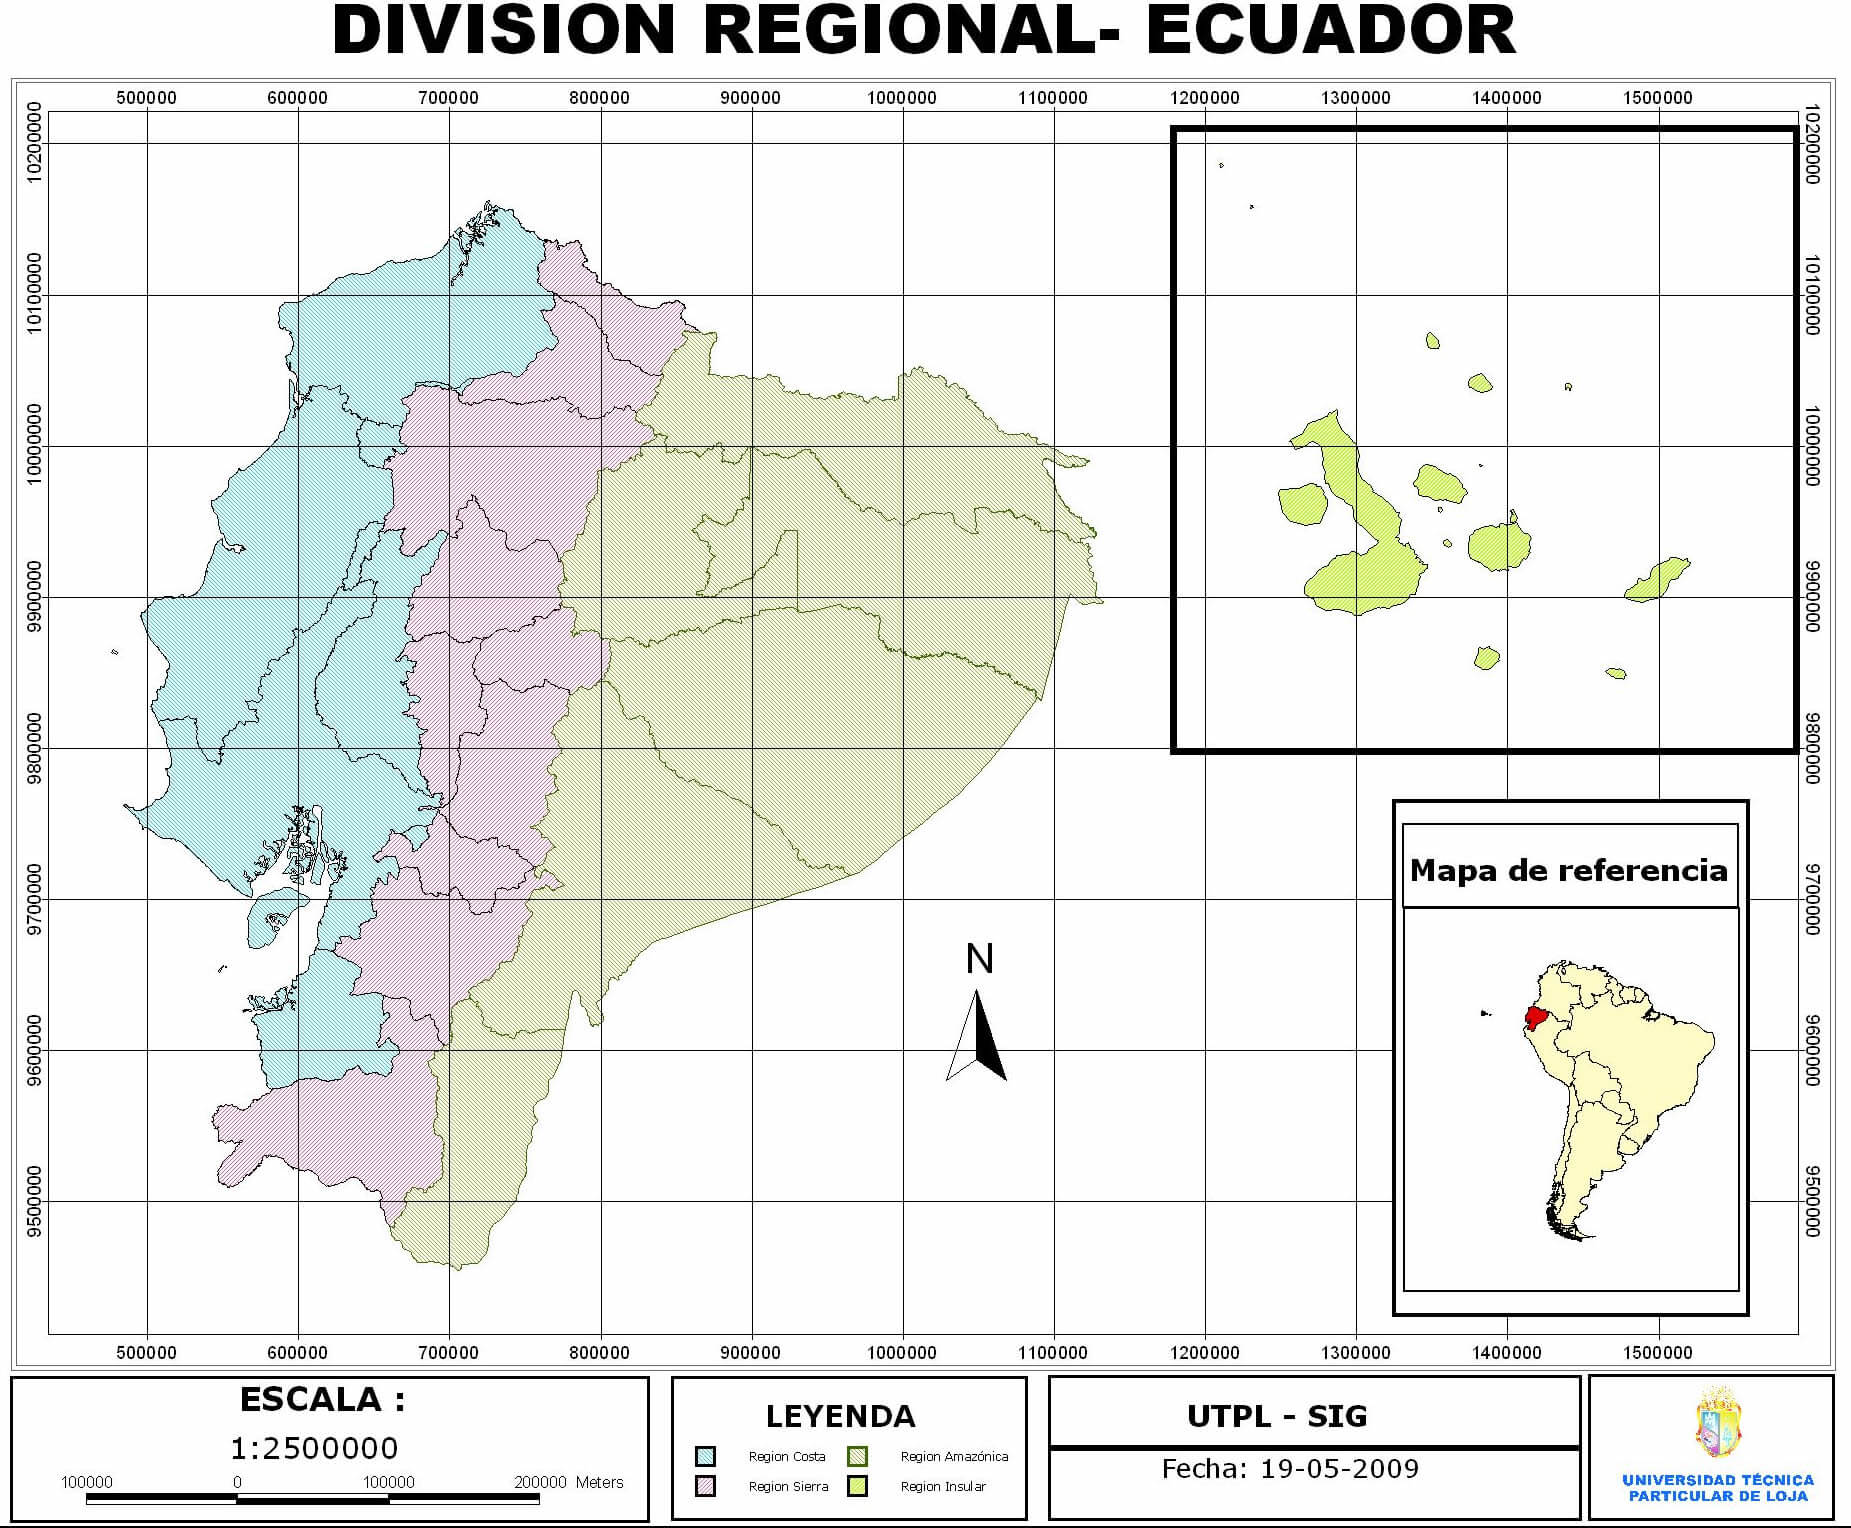 Regional Division of Ecuador 2009